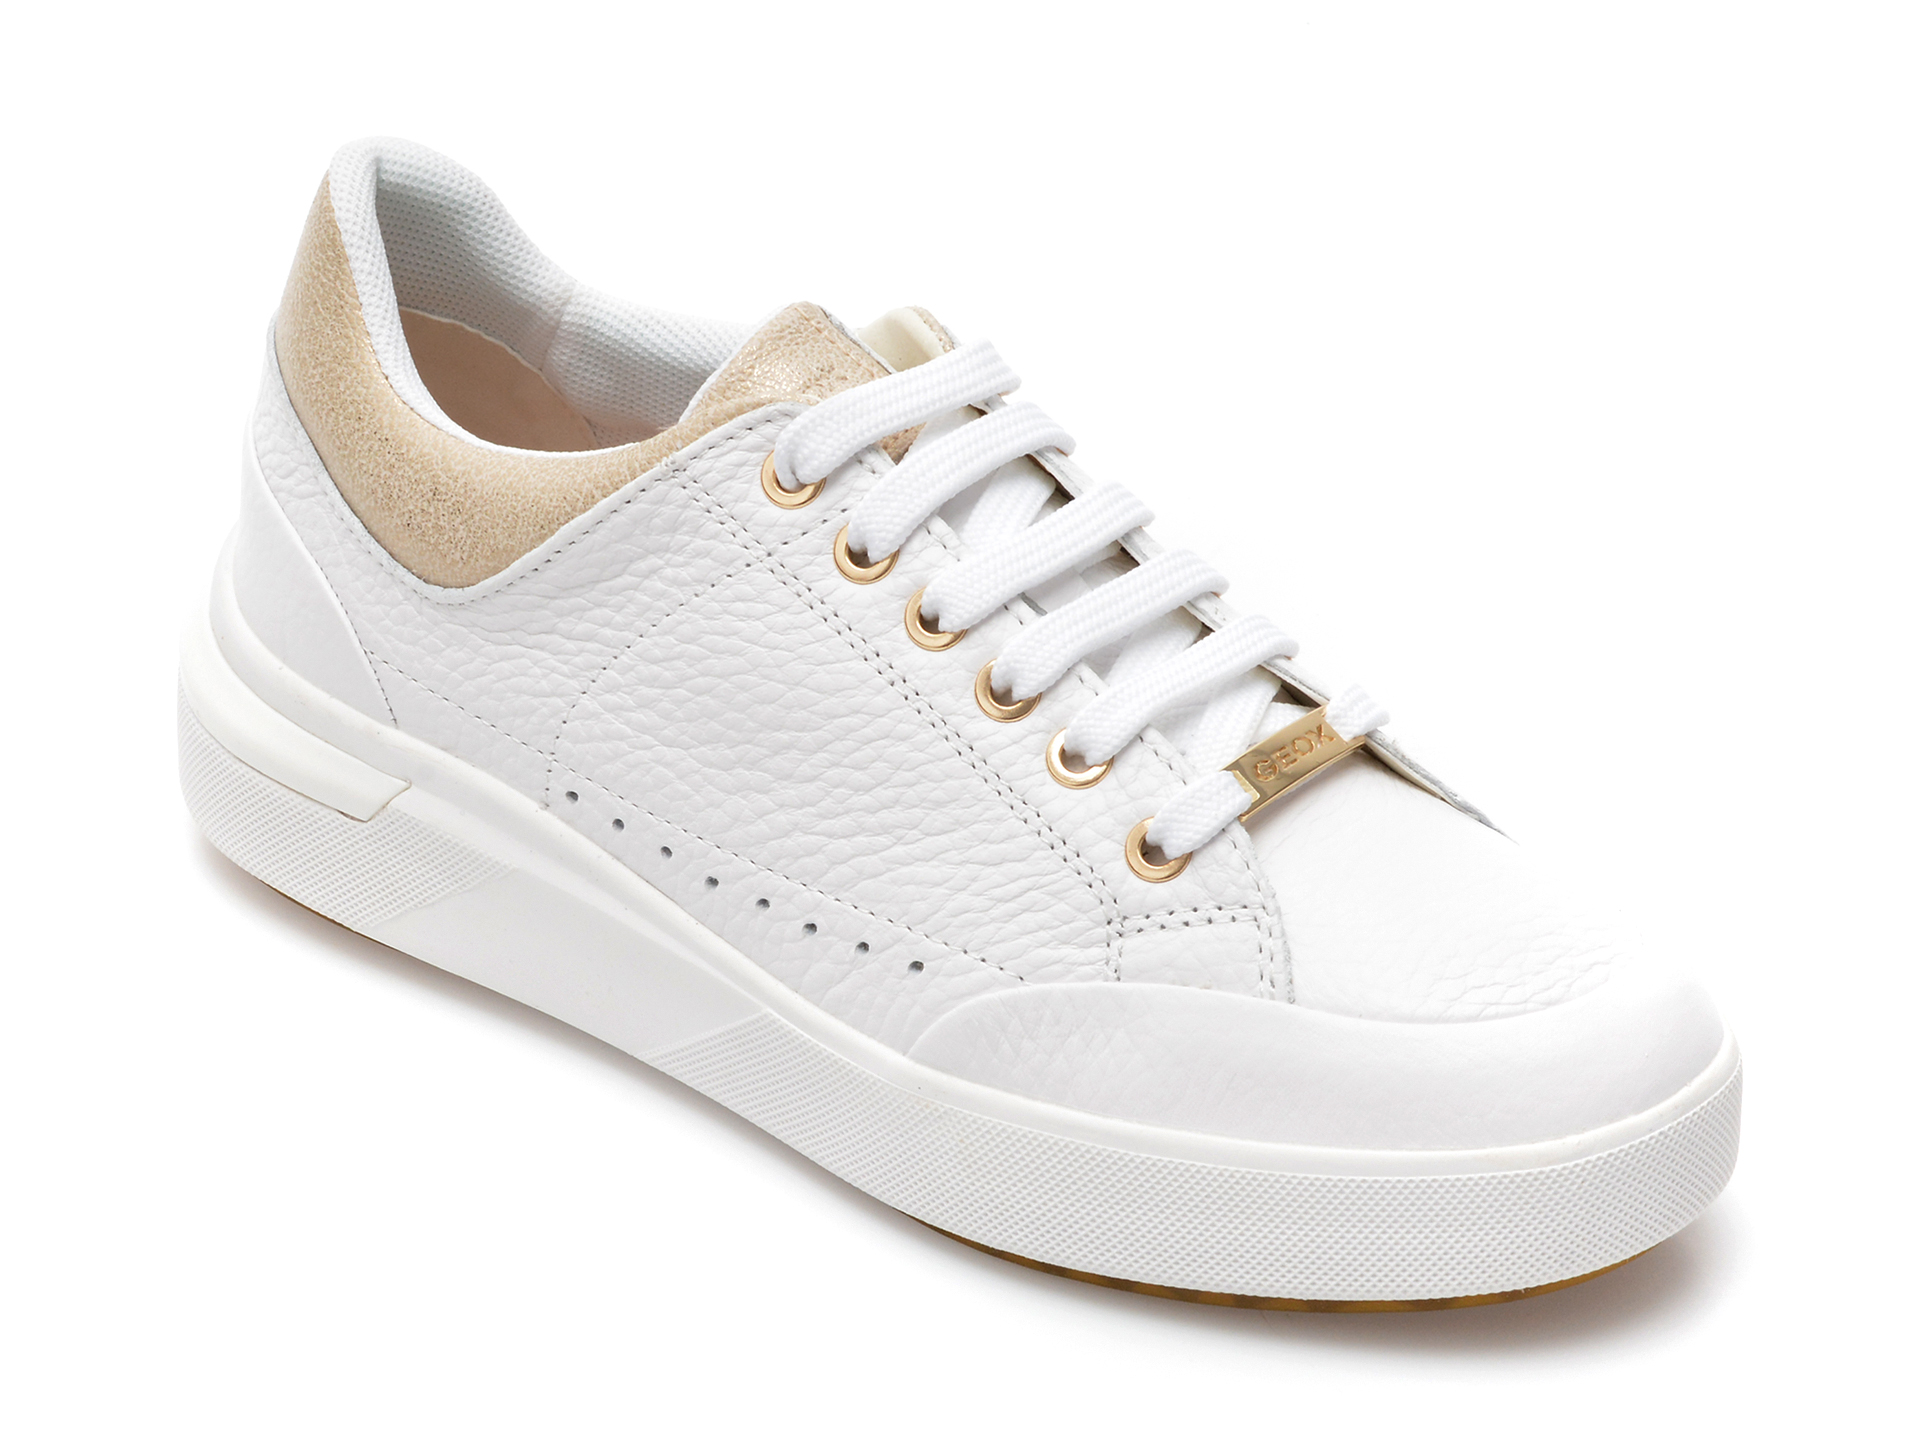 Pantofi sport GEOX albi, D25QFA, din piele naturala femei 2023-03-21